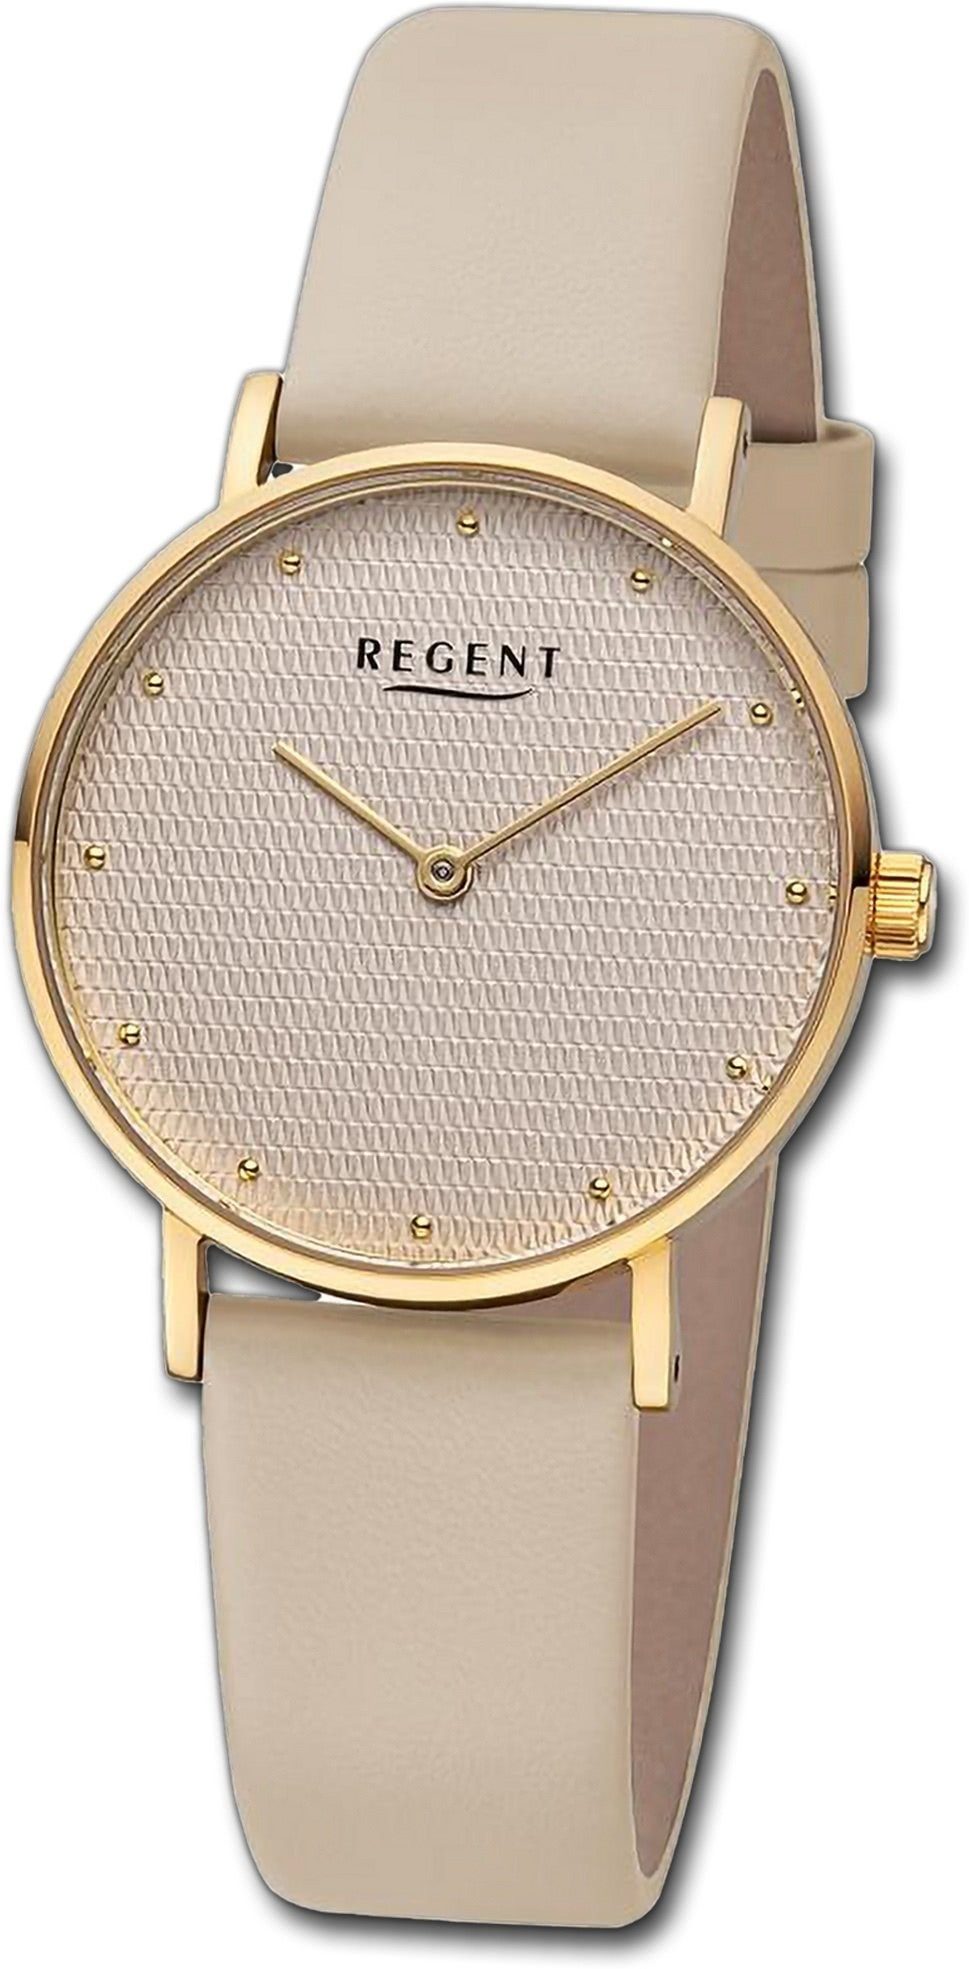 Regent Quarzuhr Regent Damen Armbanduhr Analog, Damenuhr Lederarmband hellbraun, rundes Gehäuse, extra groß (ca. 32mm)